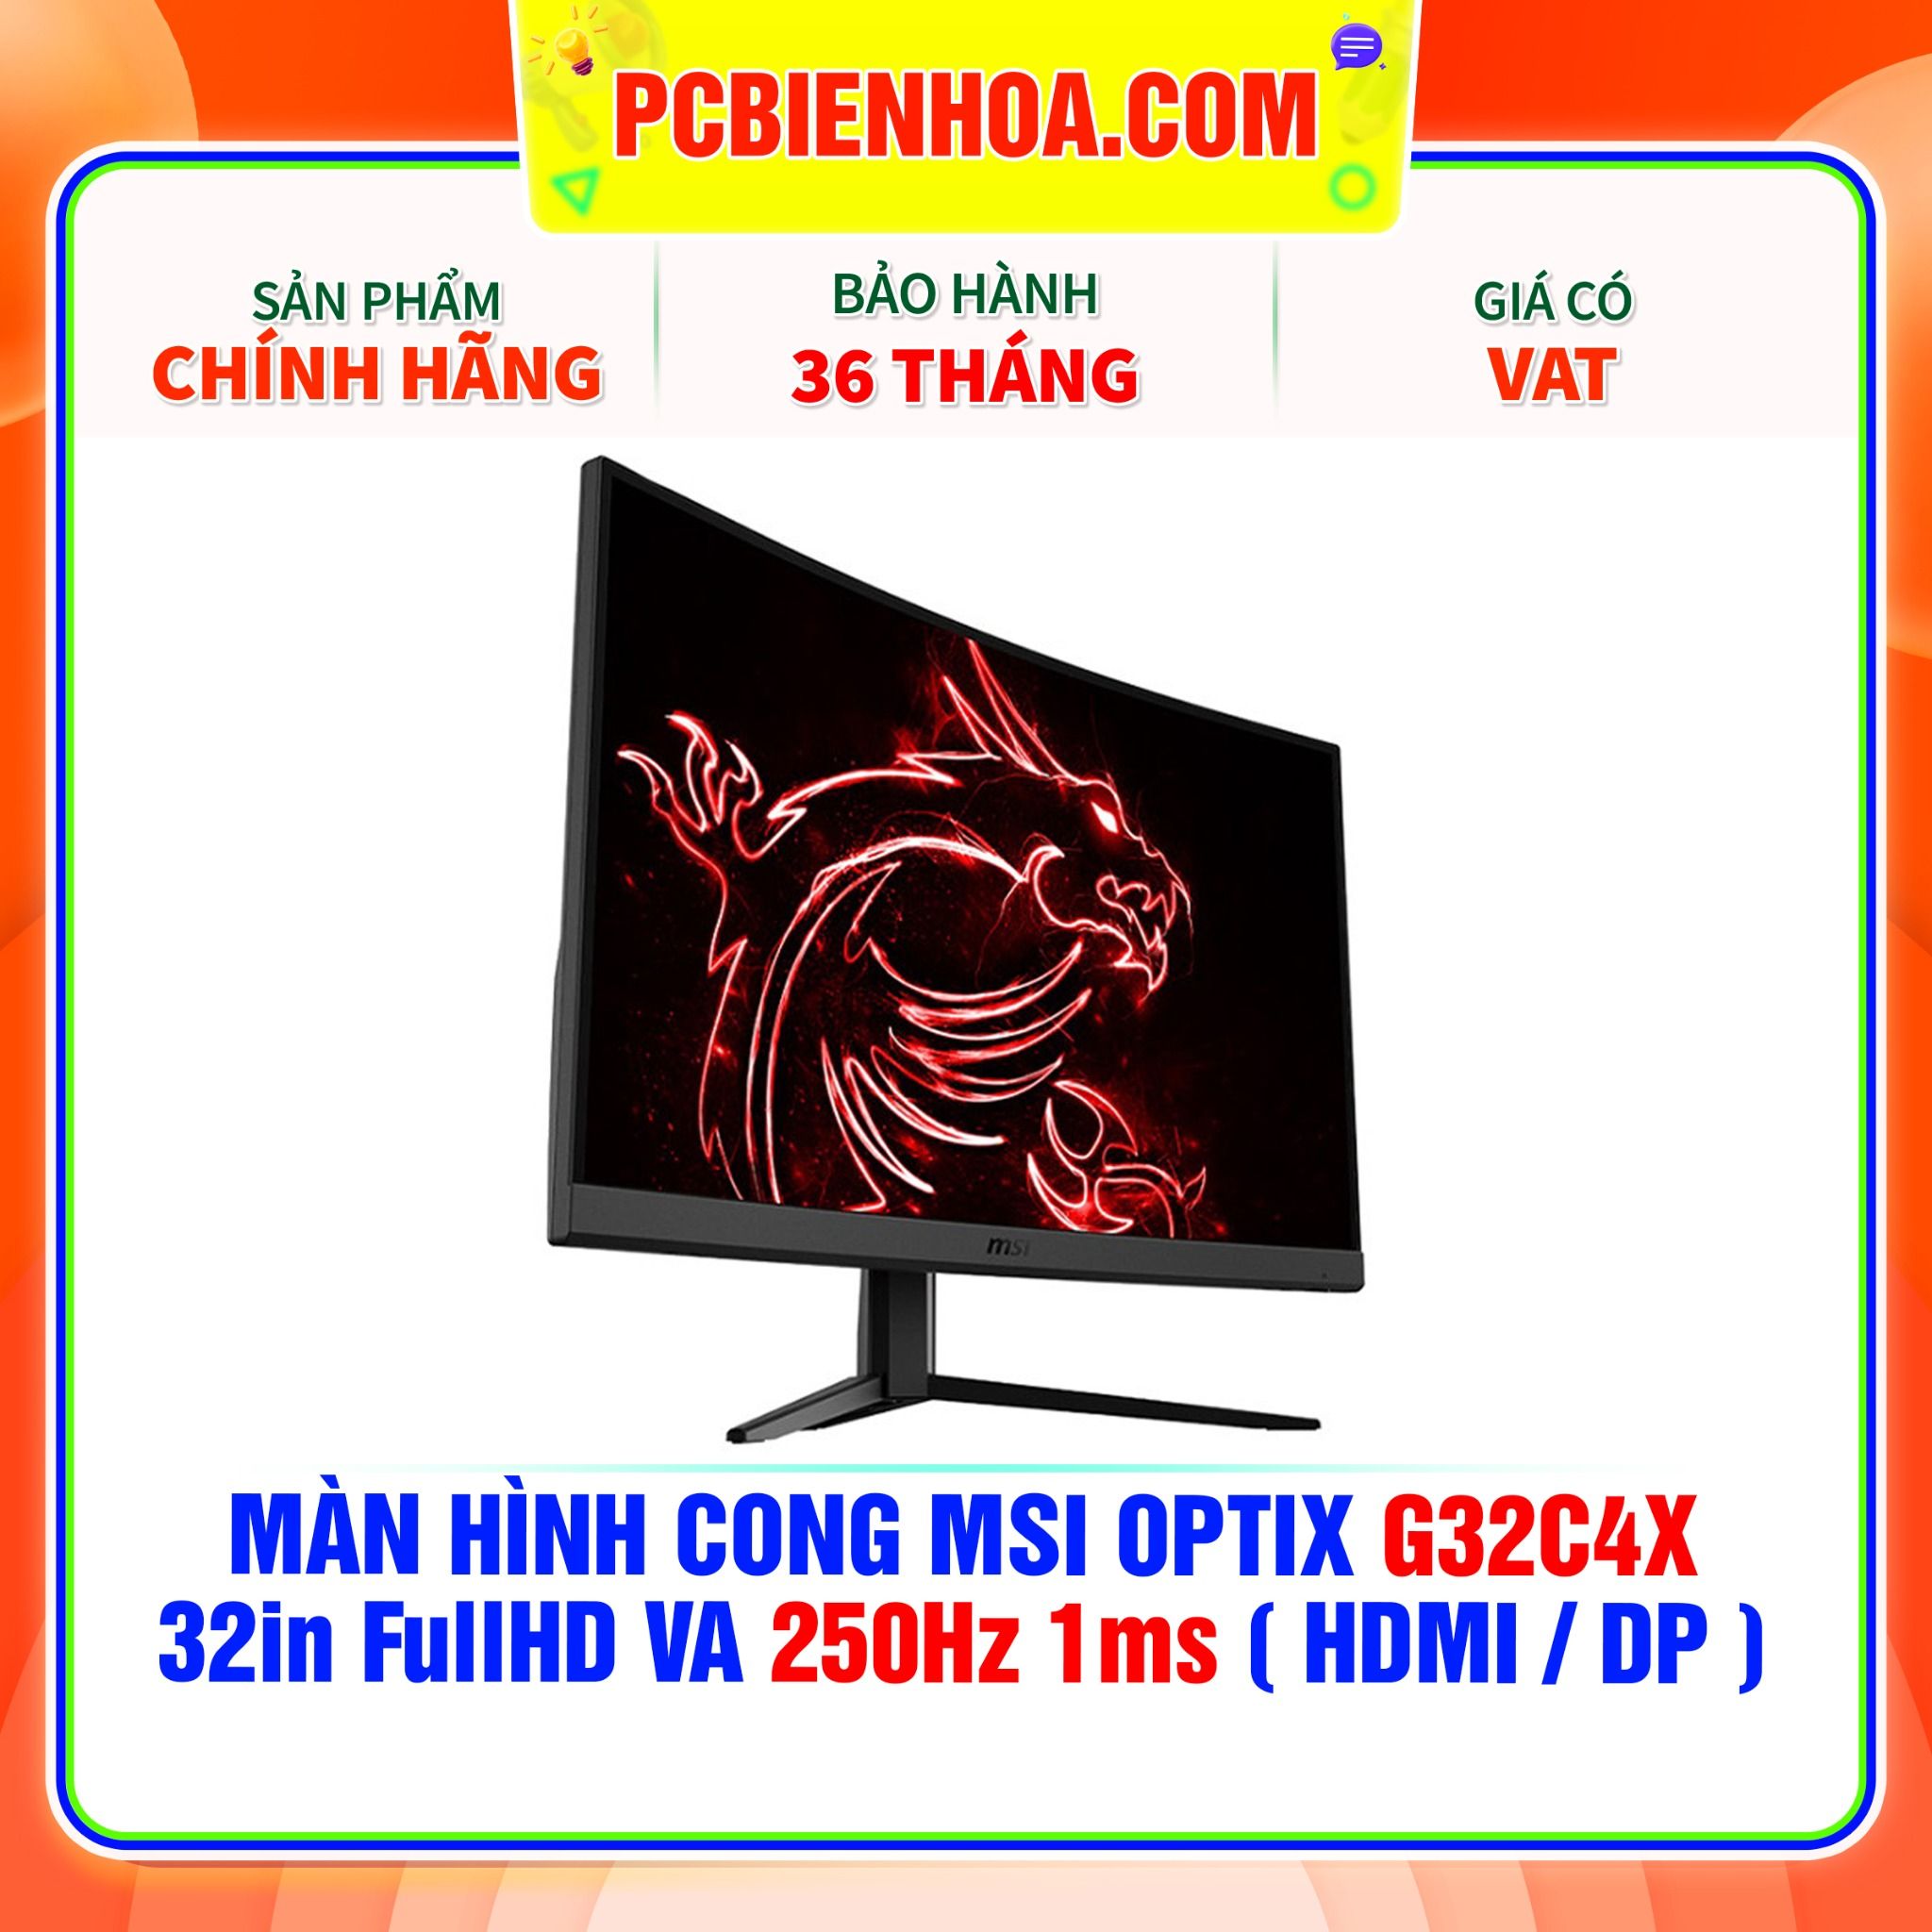  MÀN HÌNH CONG MSI OPTIX G32C4X 32in FullHD VA 250Hz 1ms ( HDMI / DP ) 